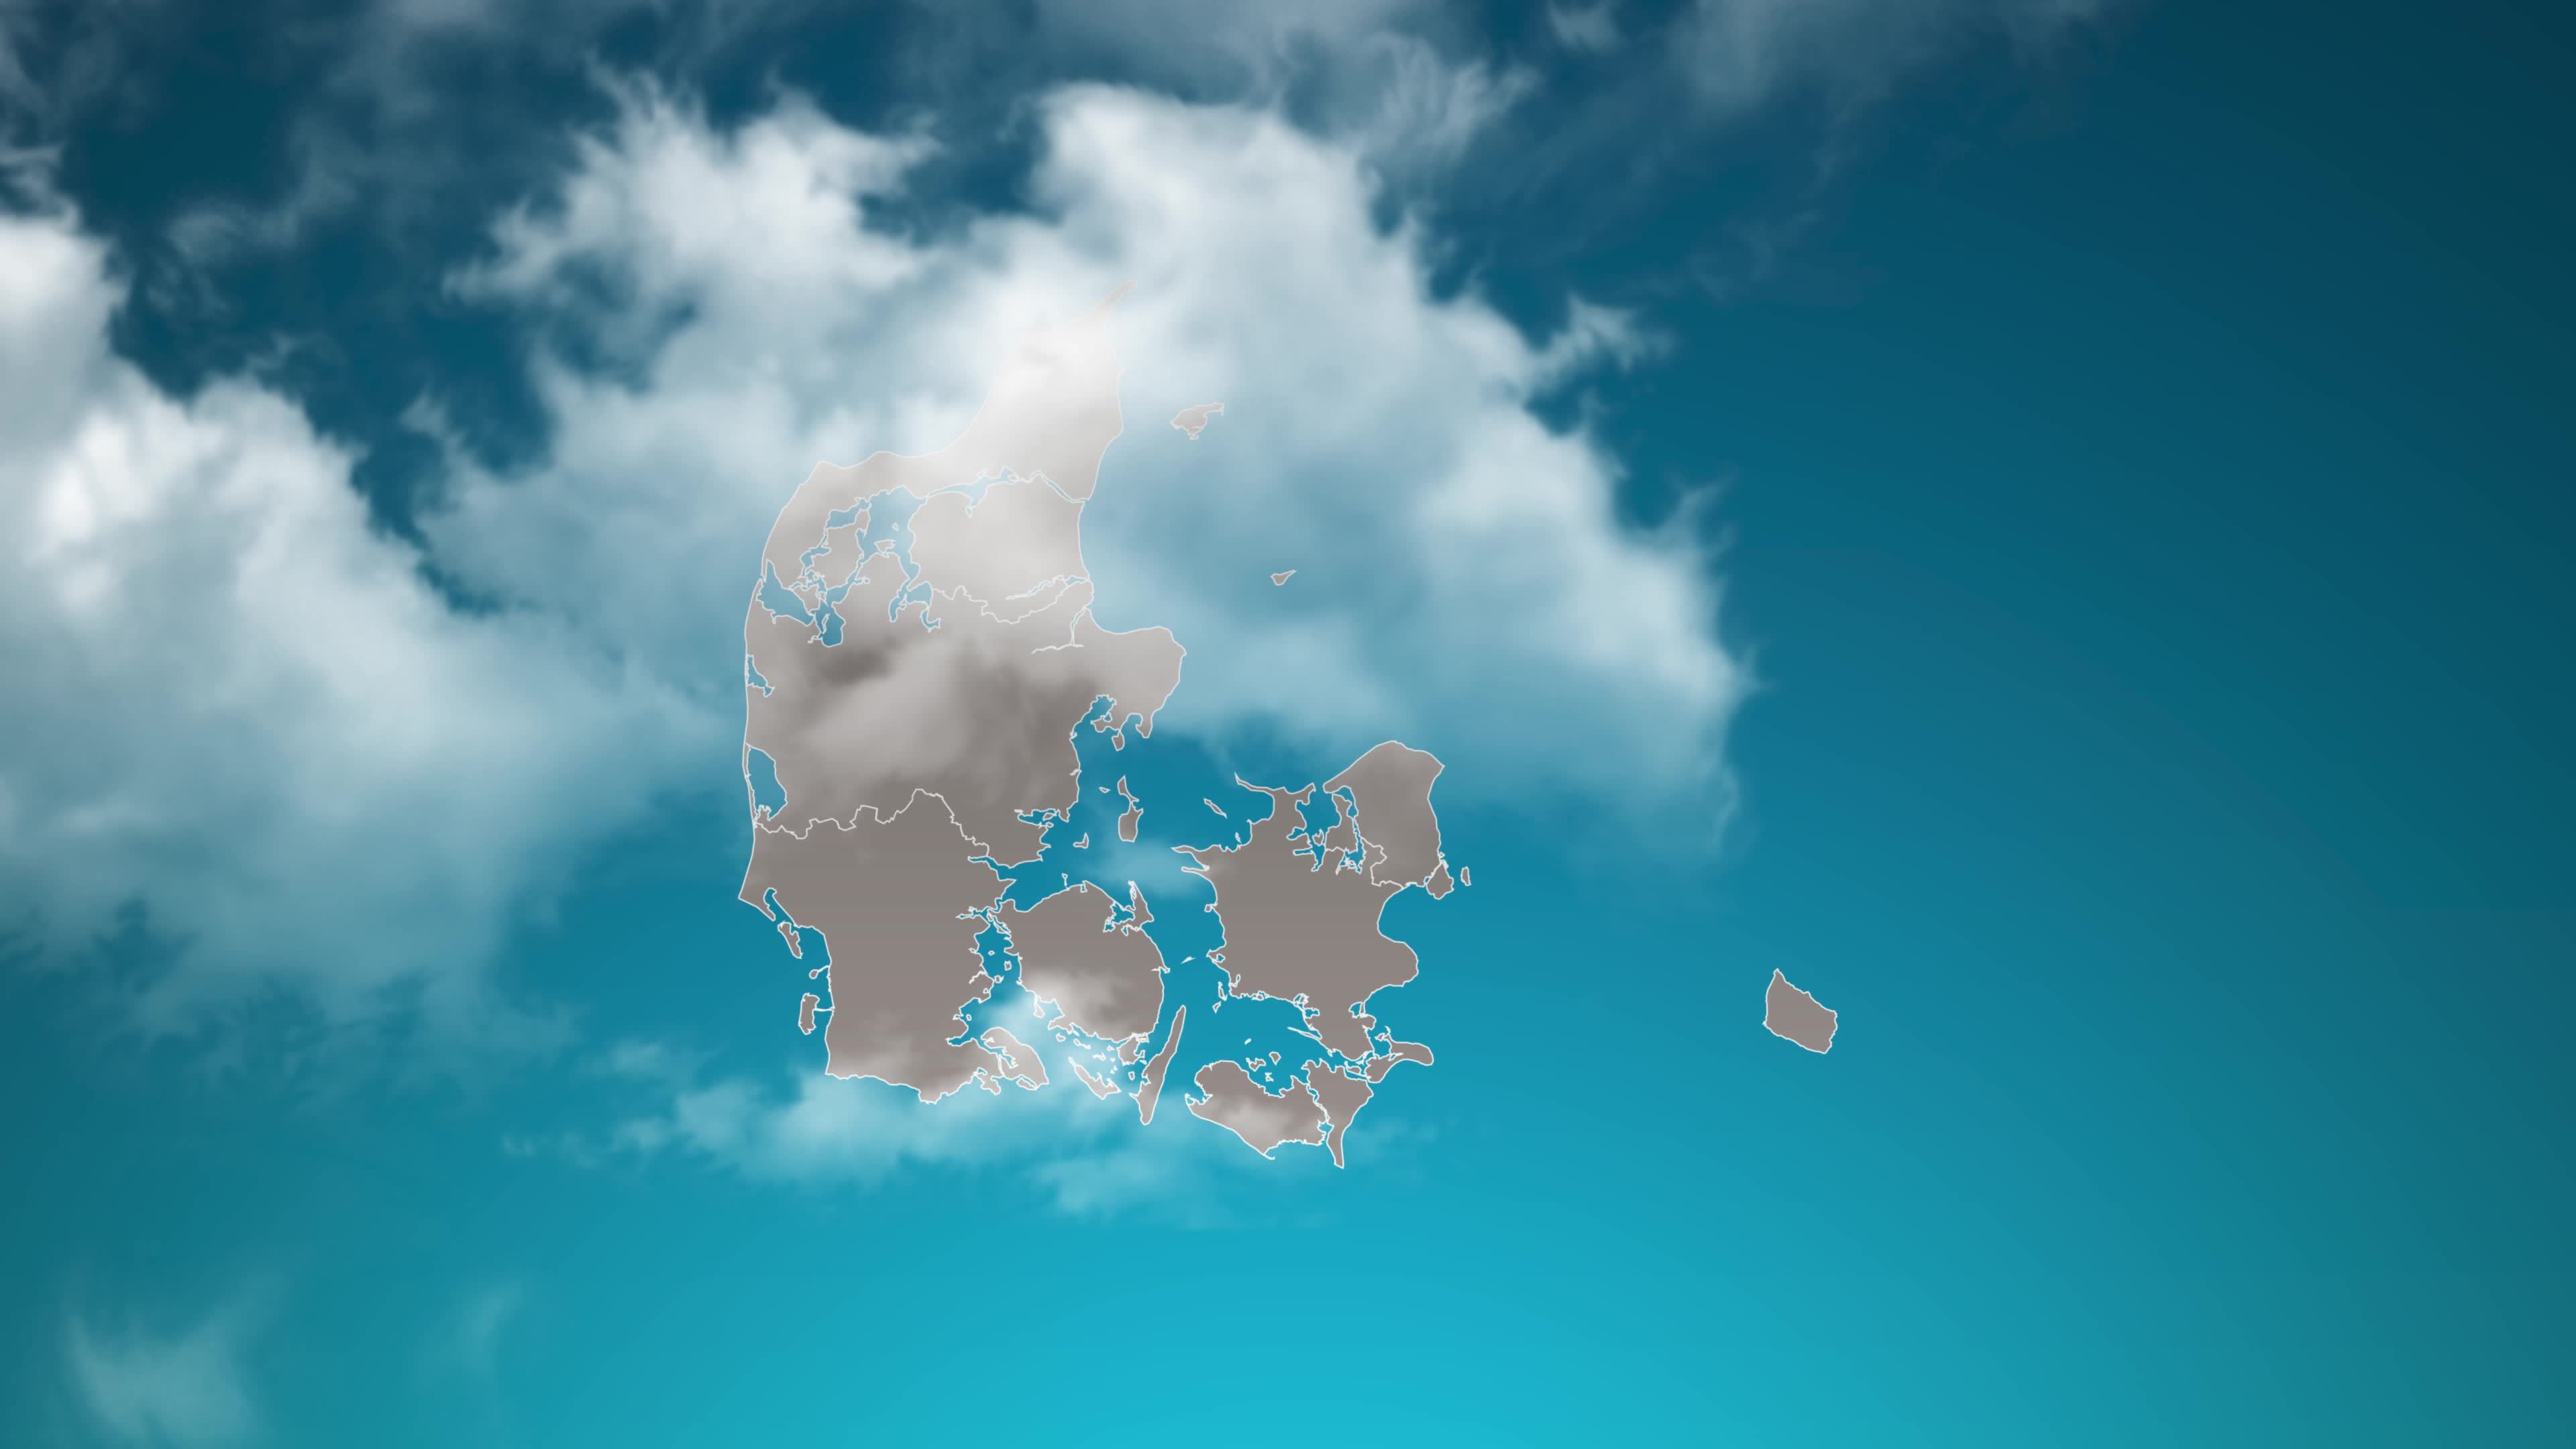 Bản đồ nước Đan Mạch (Denmark country map): Điểm danh những điểm đến hấp dẫn trên bản đồ xinh đẹp của Đan Mạch: Copenhagen, Helsingør, Aarhus hay Legoland. Cùng khám phá những điều thú vị mà vùng đất Bắc Âu này mang lại.